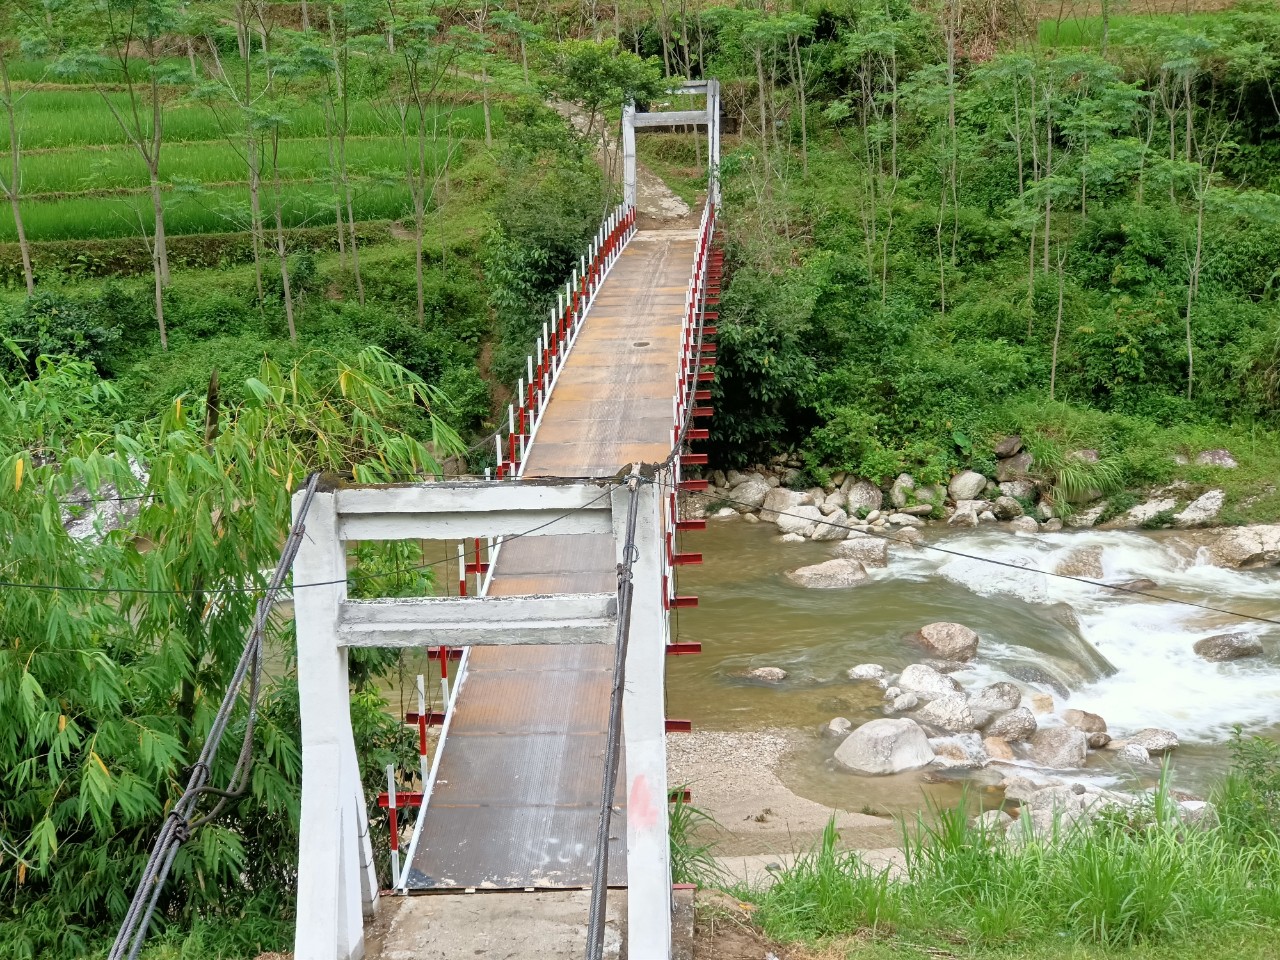 Hoàn thiện sửa chữa cây cầu gỗ mục ở Hà Giang - Ảnh 2.